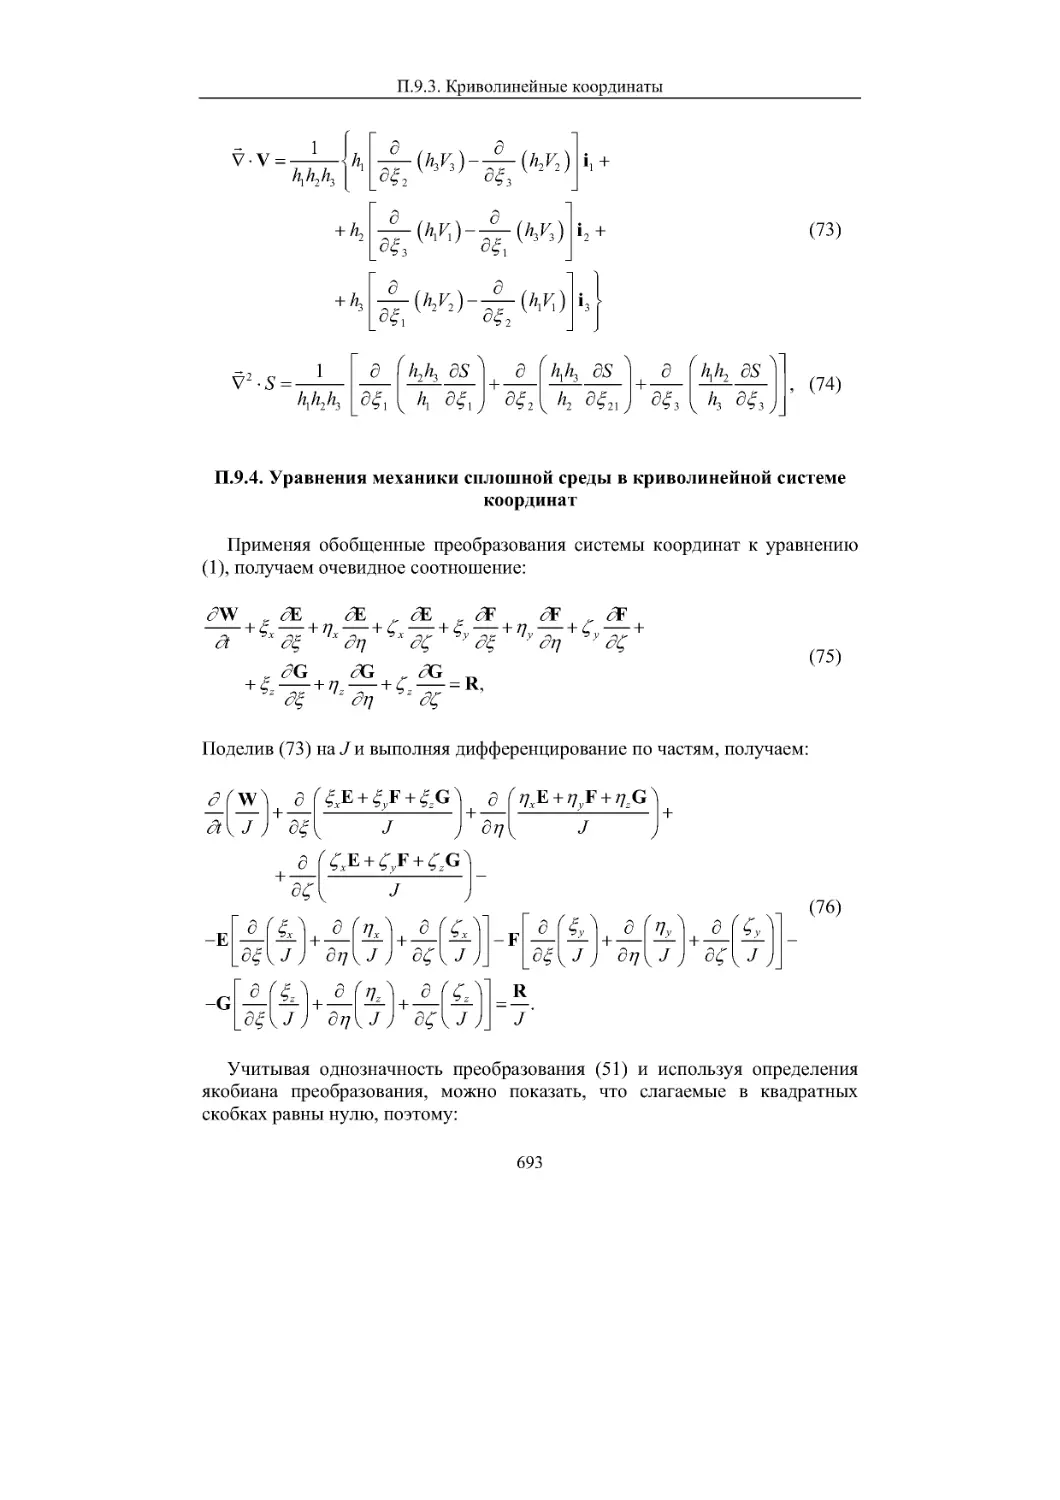 П.9.4. Уравнения механики сплошной среды в криволинейной системе координат